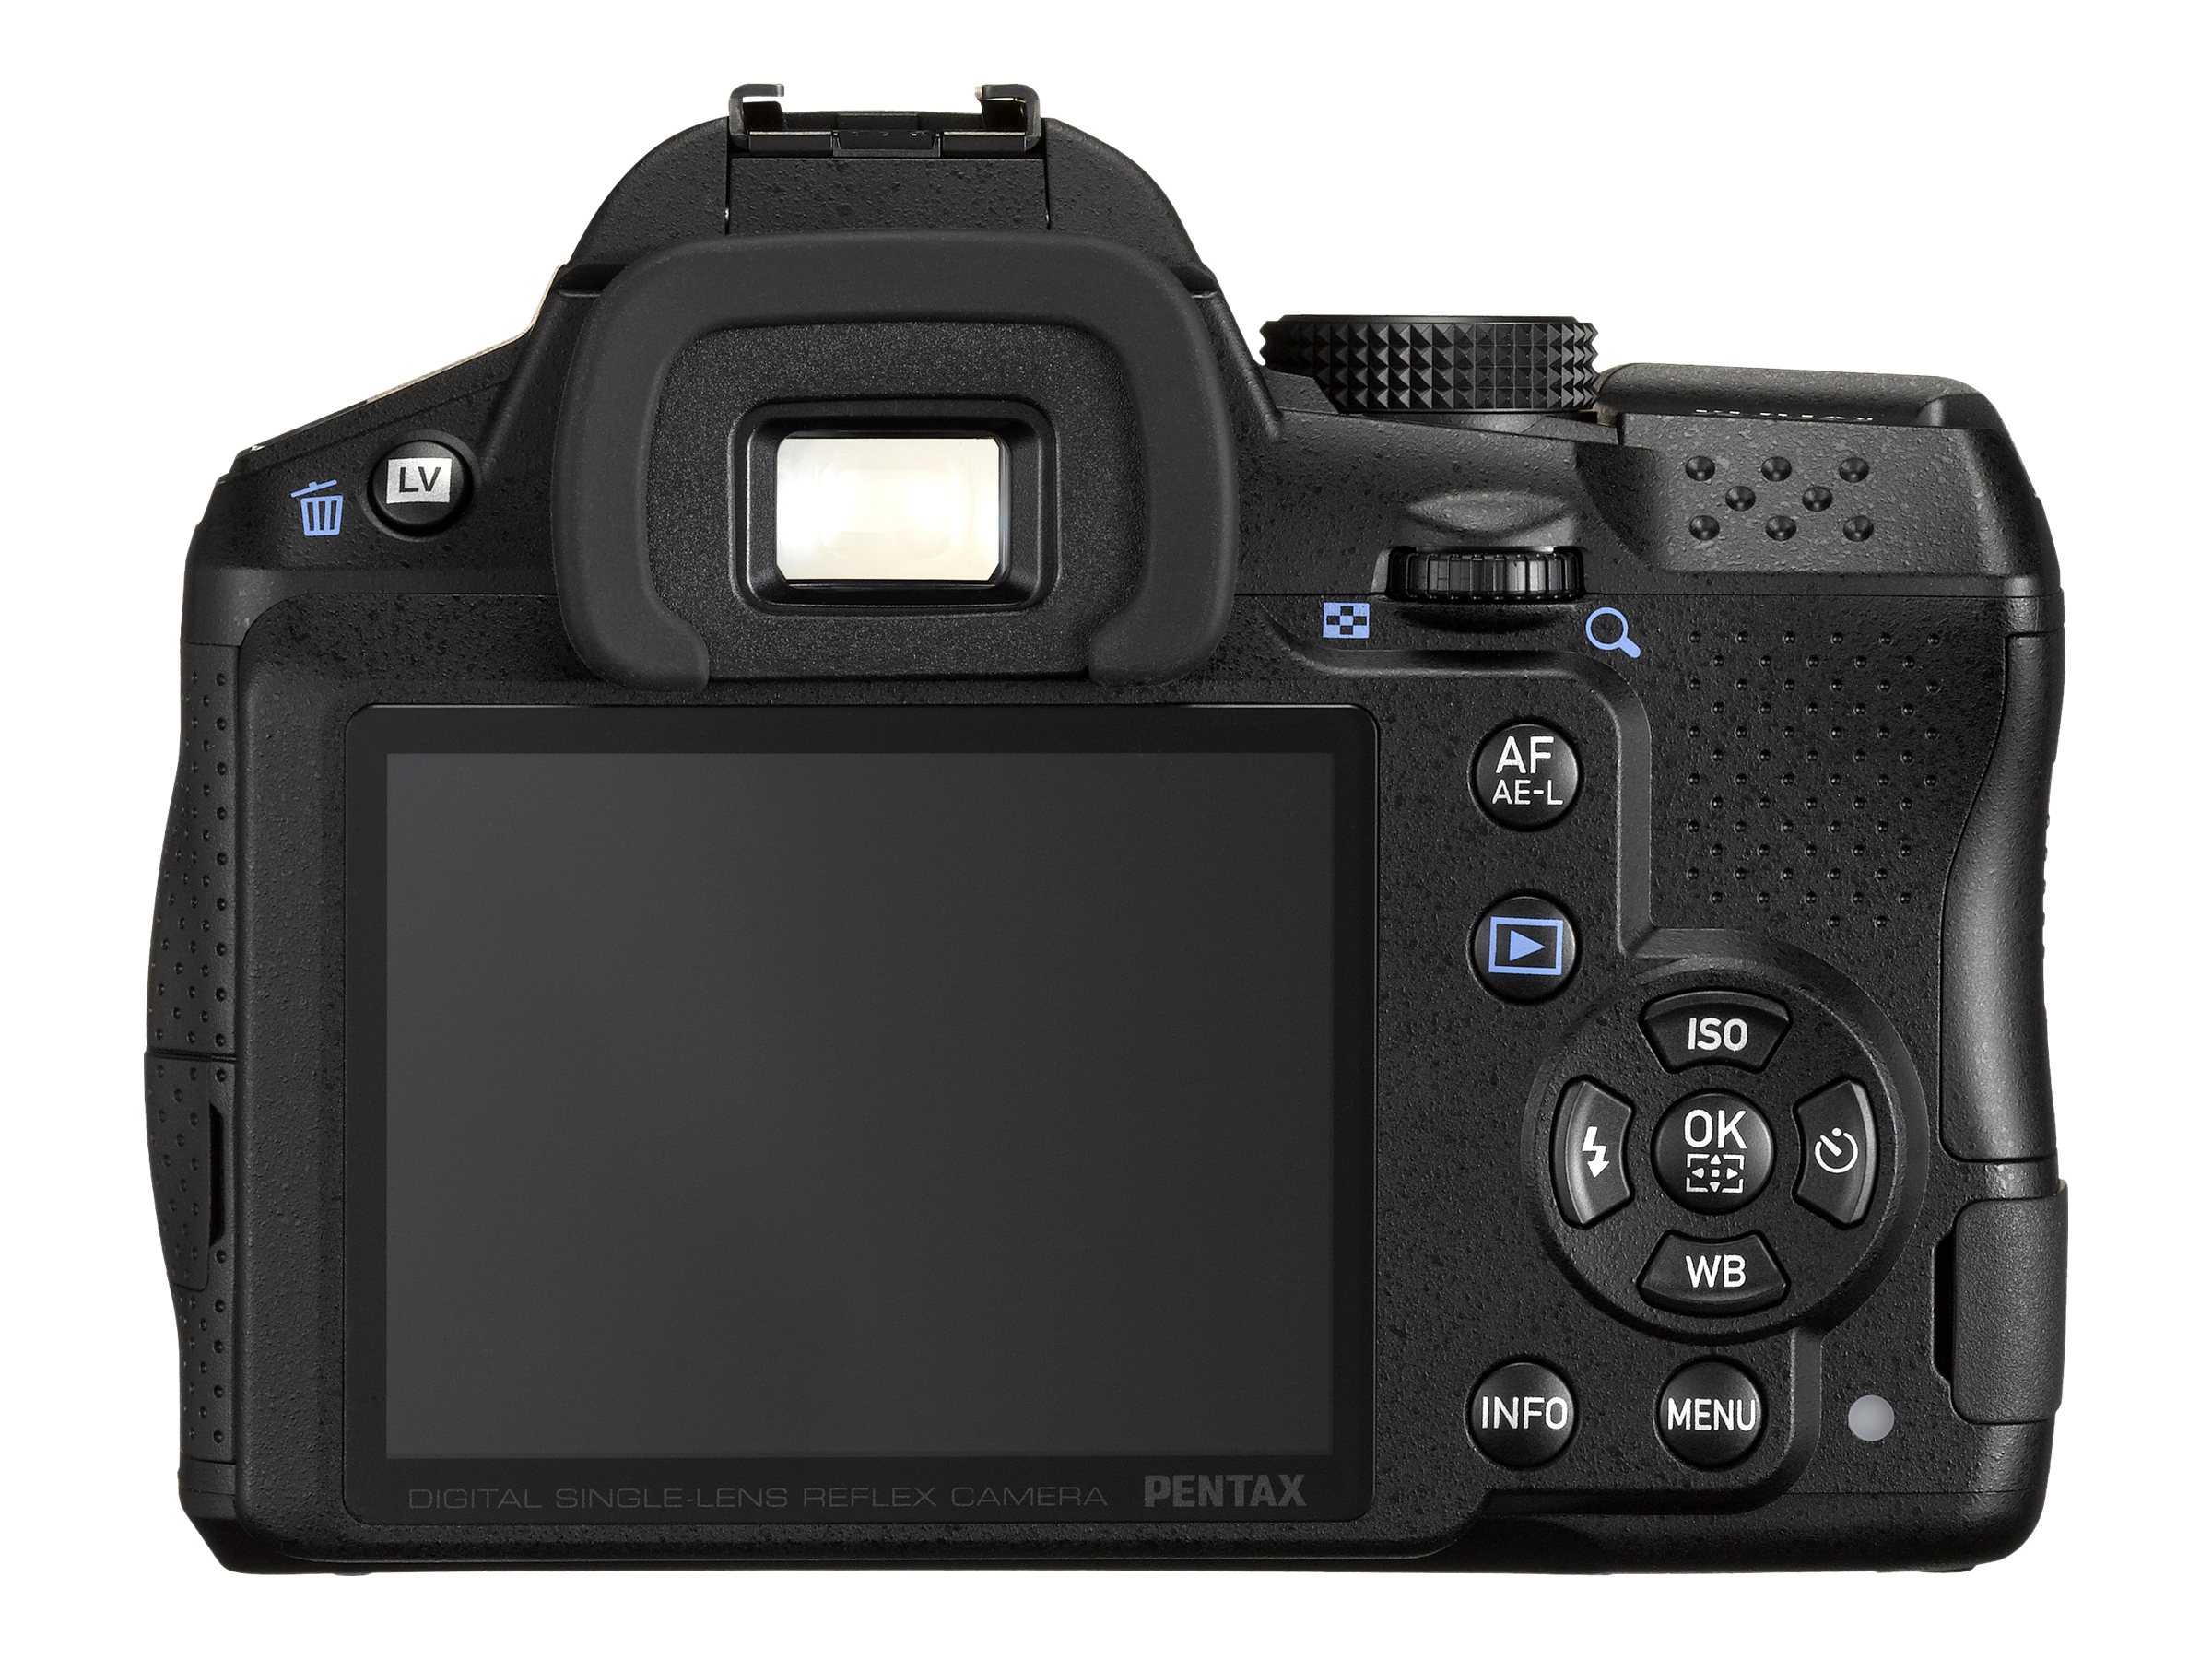 Pentax K-30 Weather-Sealed 16 MP CMOS Digital SLR with 18-55mm Lens (Black) - image 3 of 3